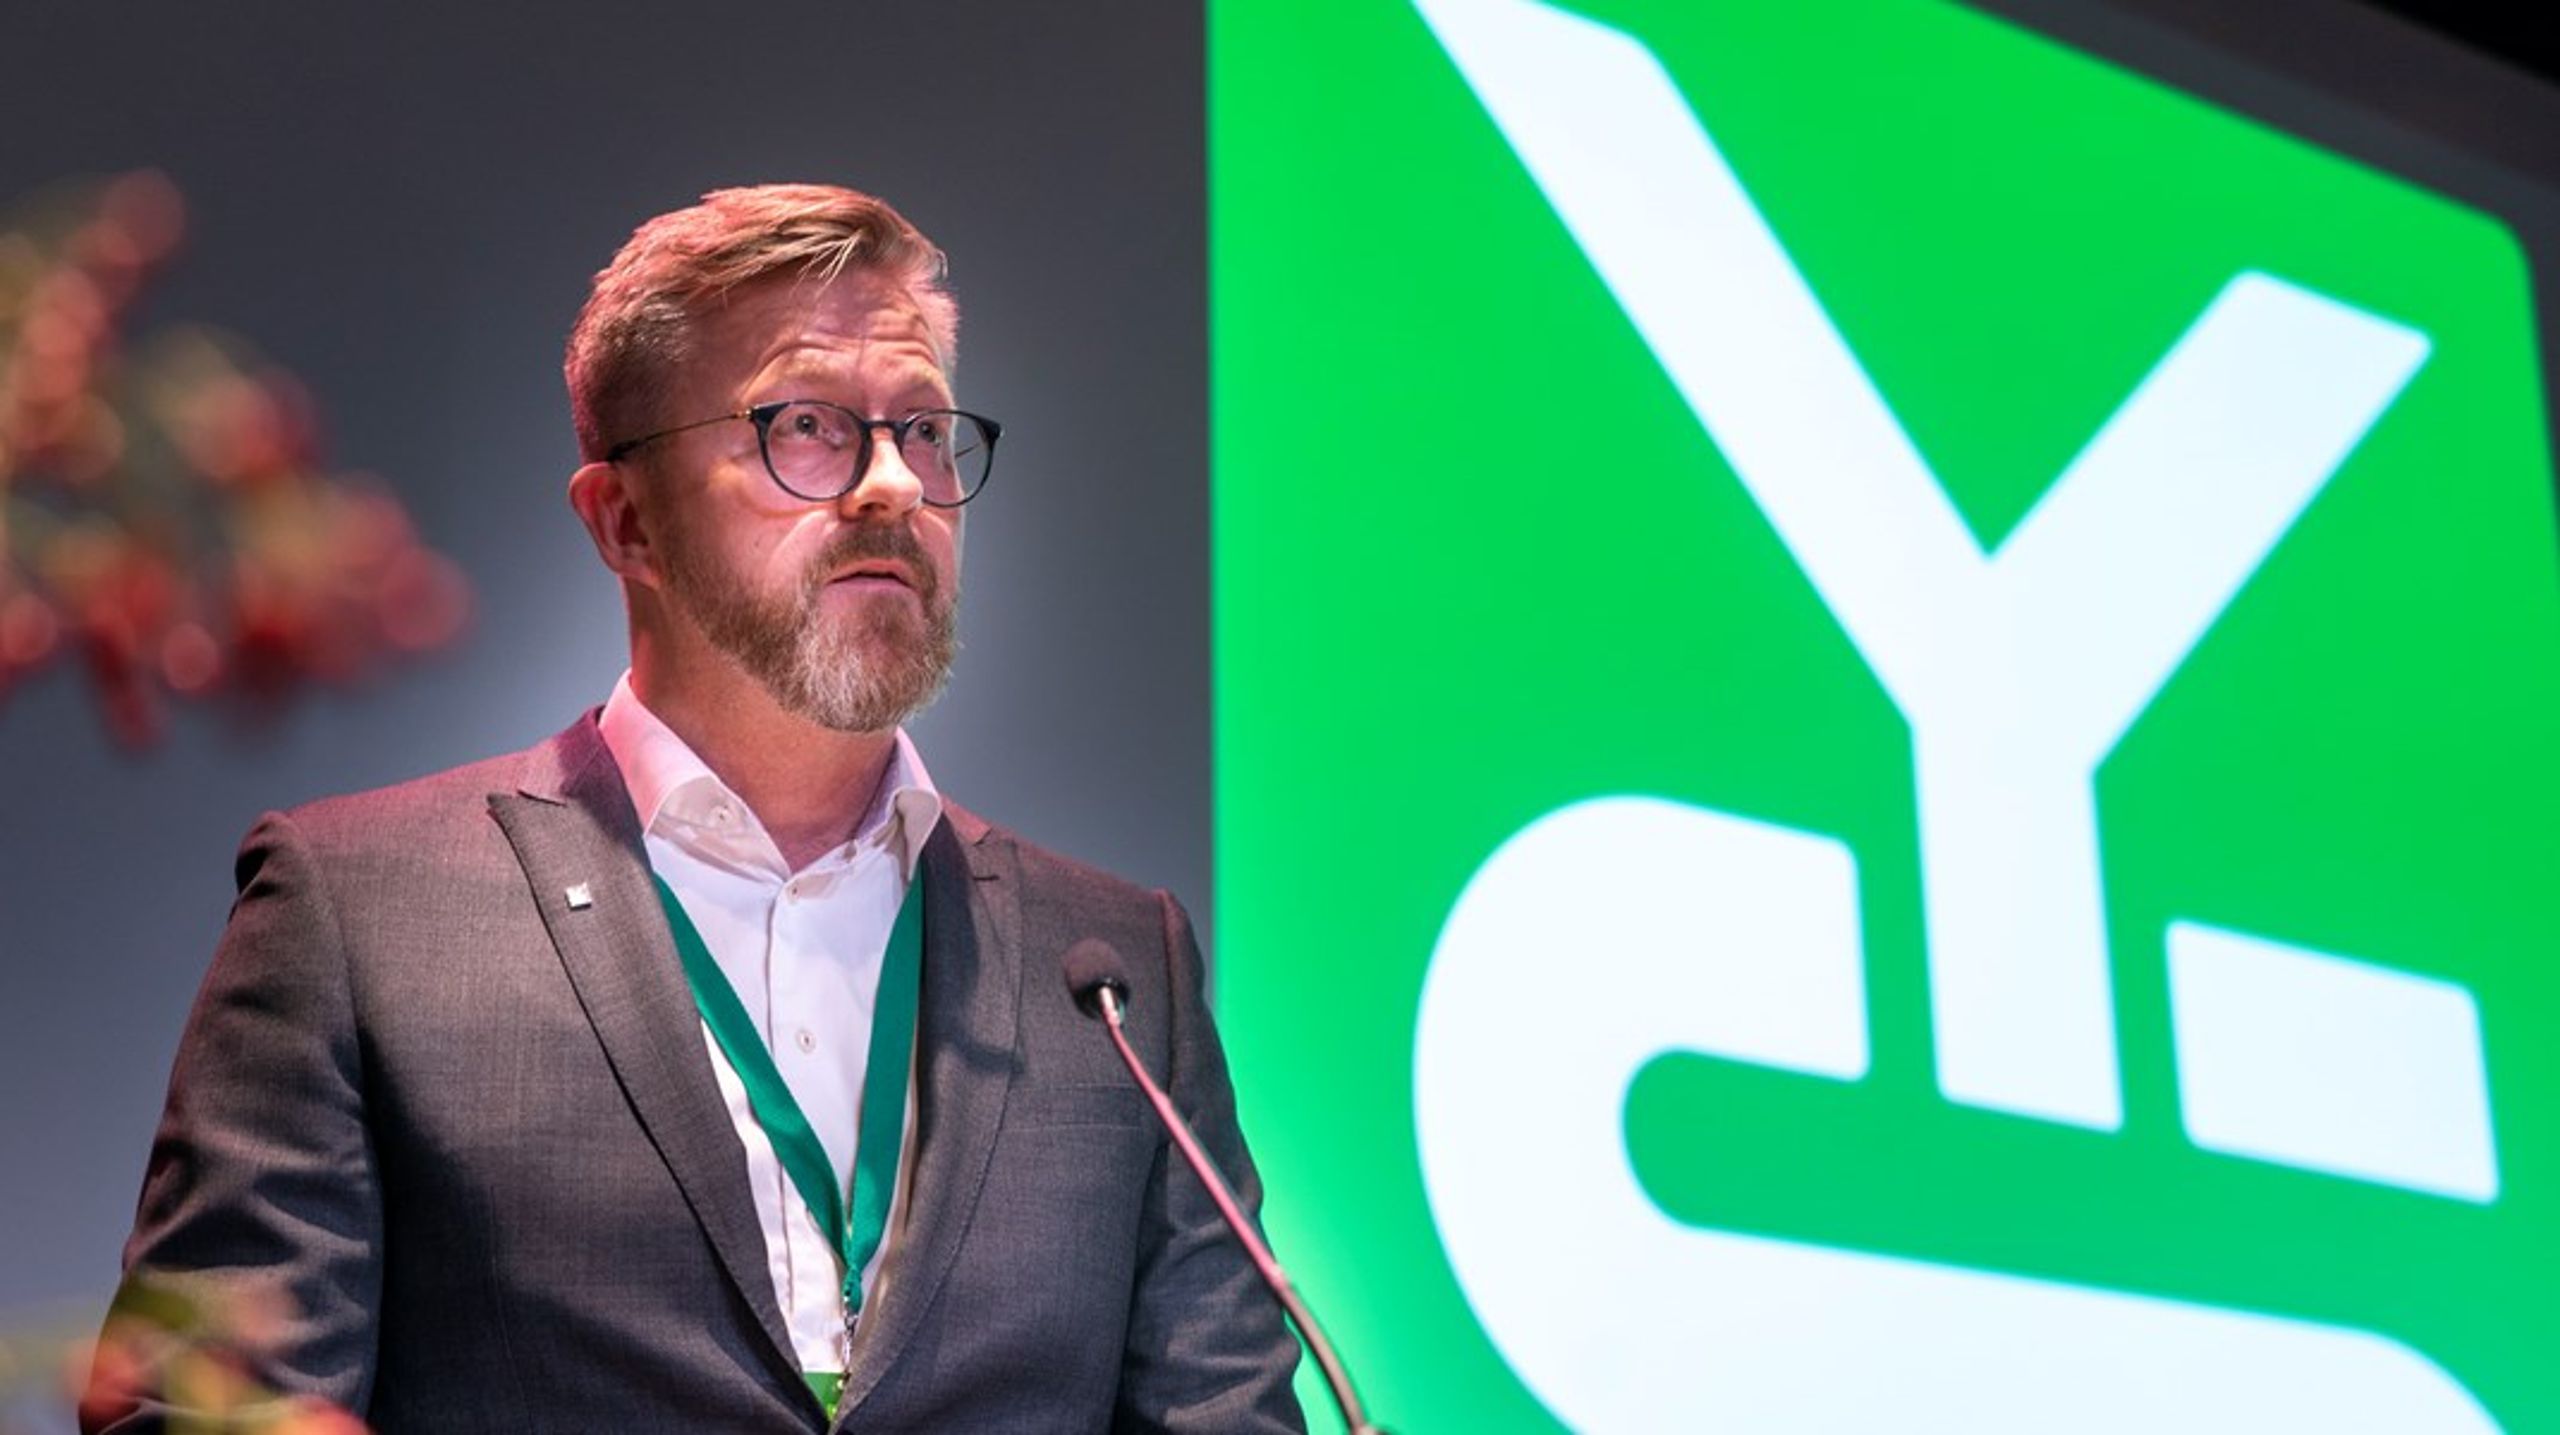 YS-leder Hans-Erik Skjæggerud er bekymret over de økende lønnsforskjellene. Arbeidstakerne må en rettferdig andel av verdiskapingen, slår han fast.